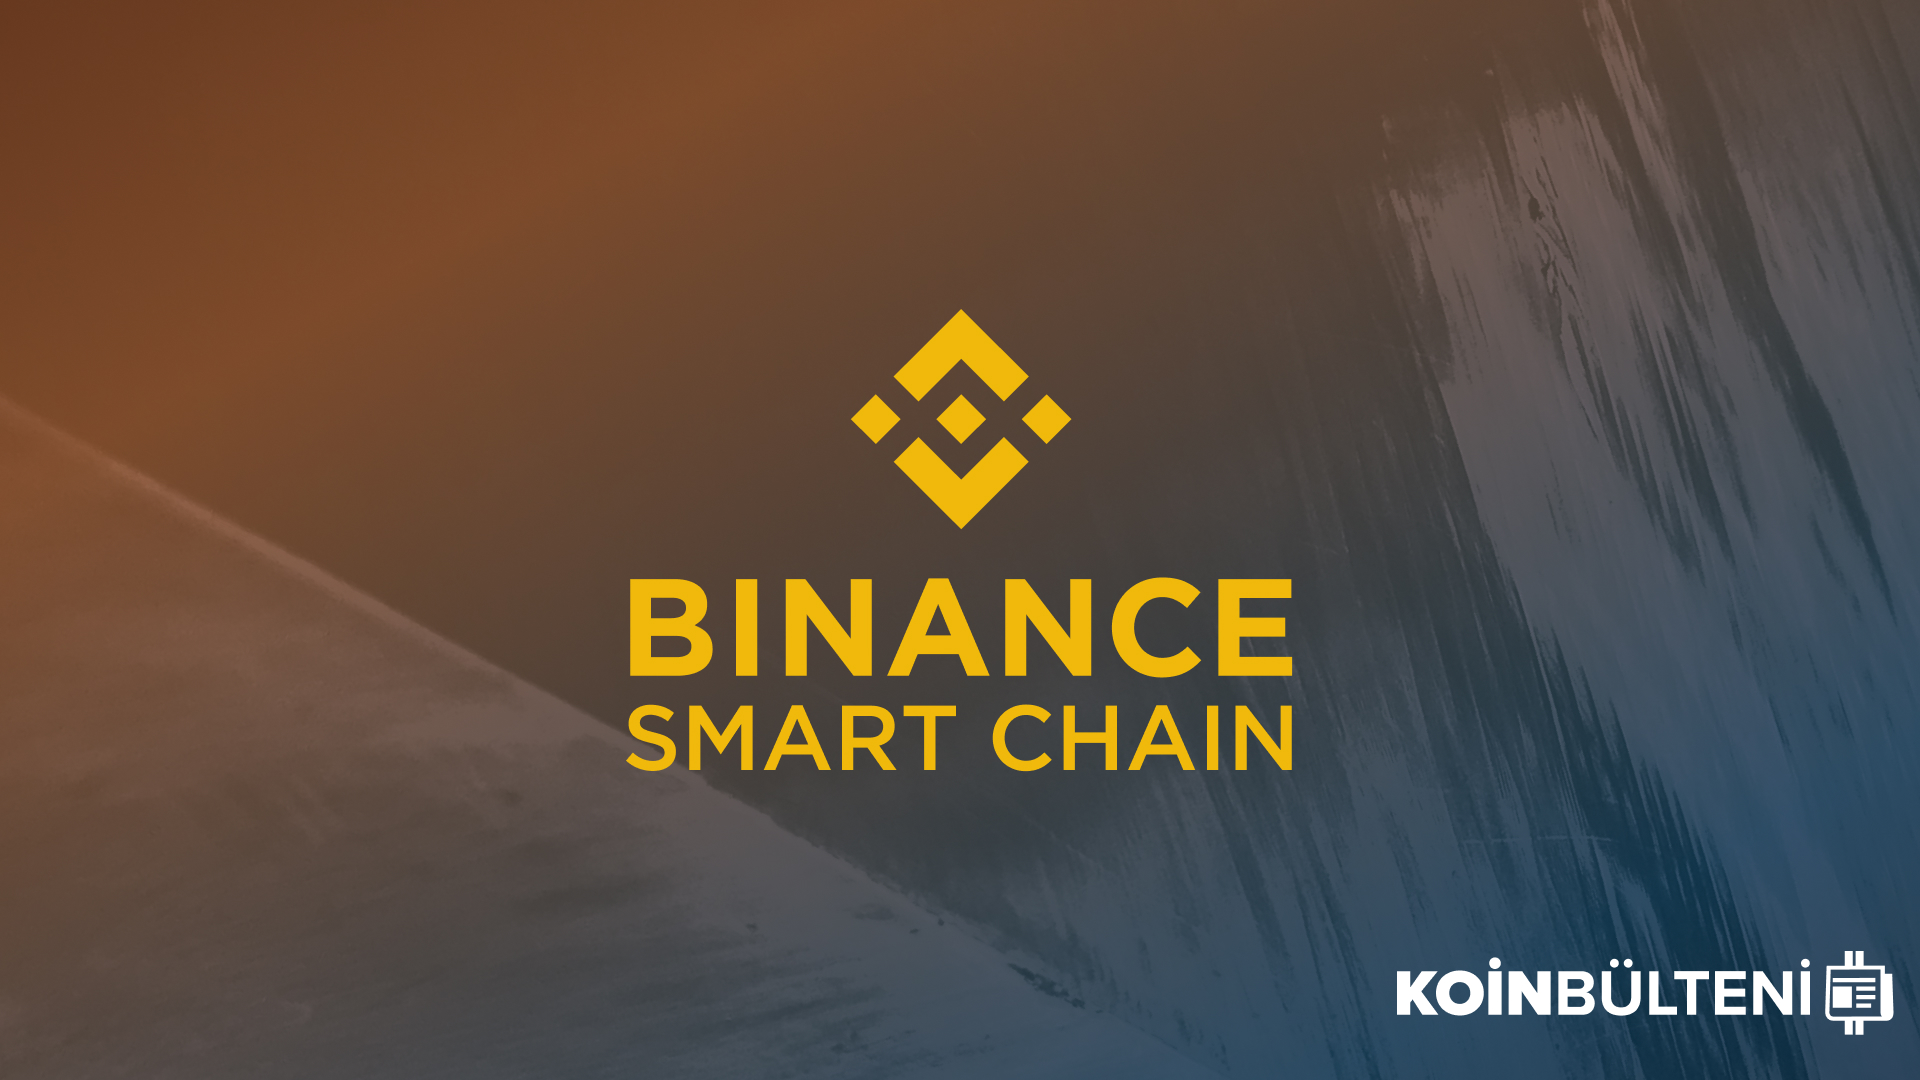 binance-smart-chain-alpha-finance-kripto-para-blockchain-coin